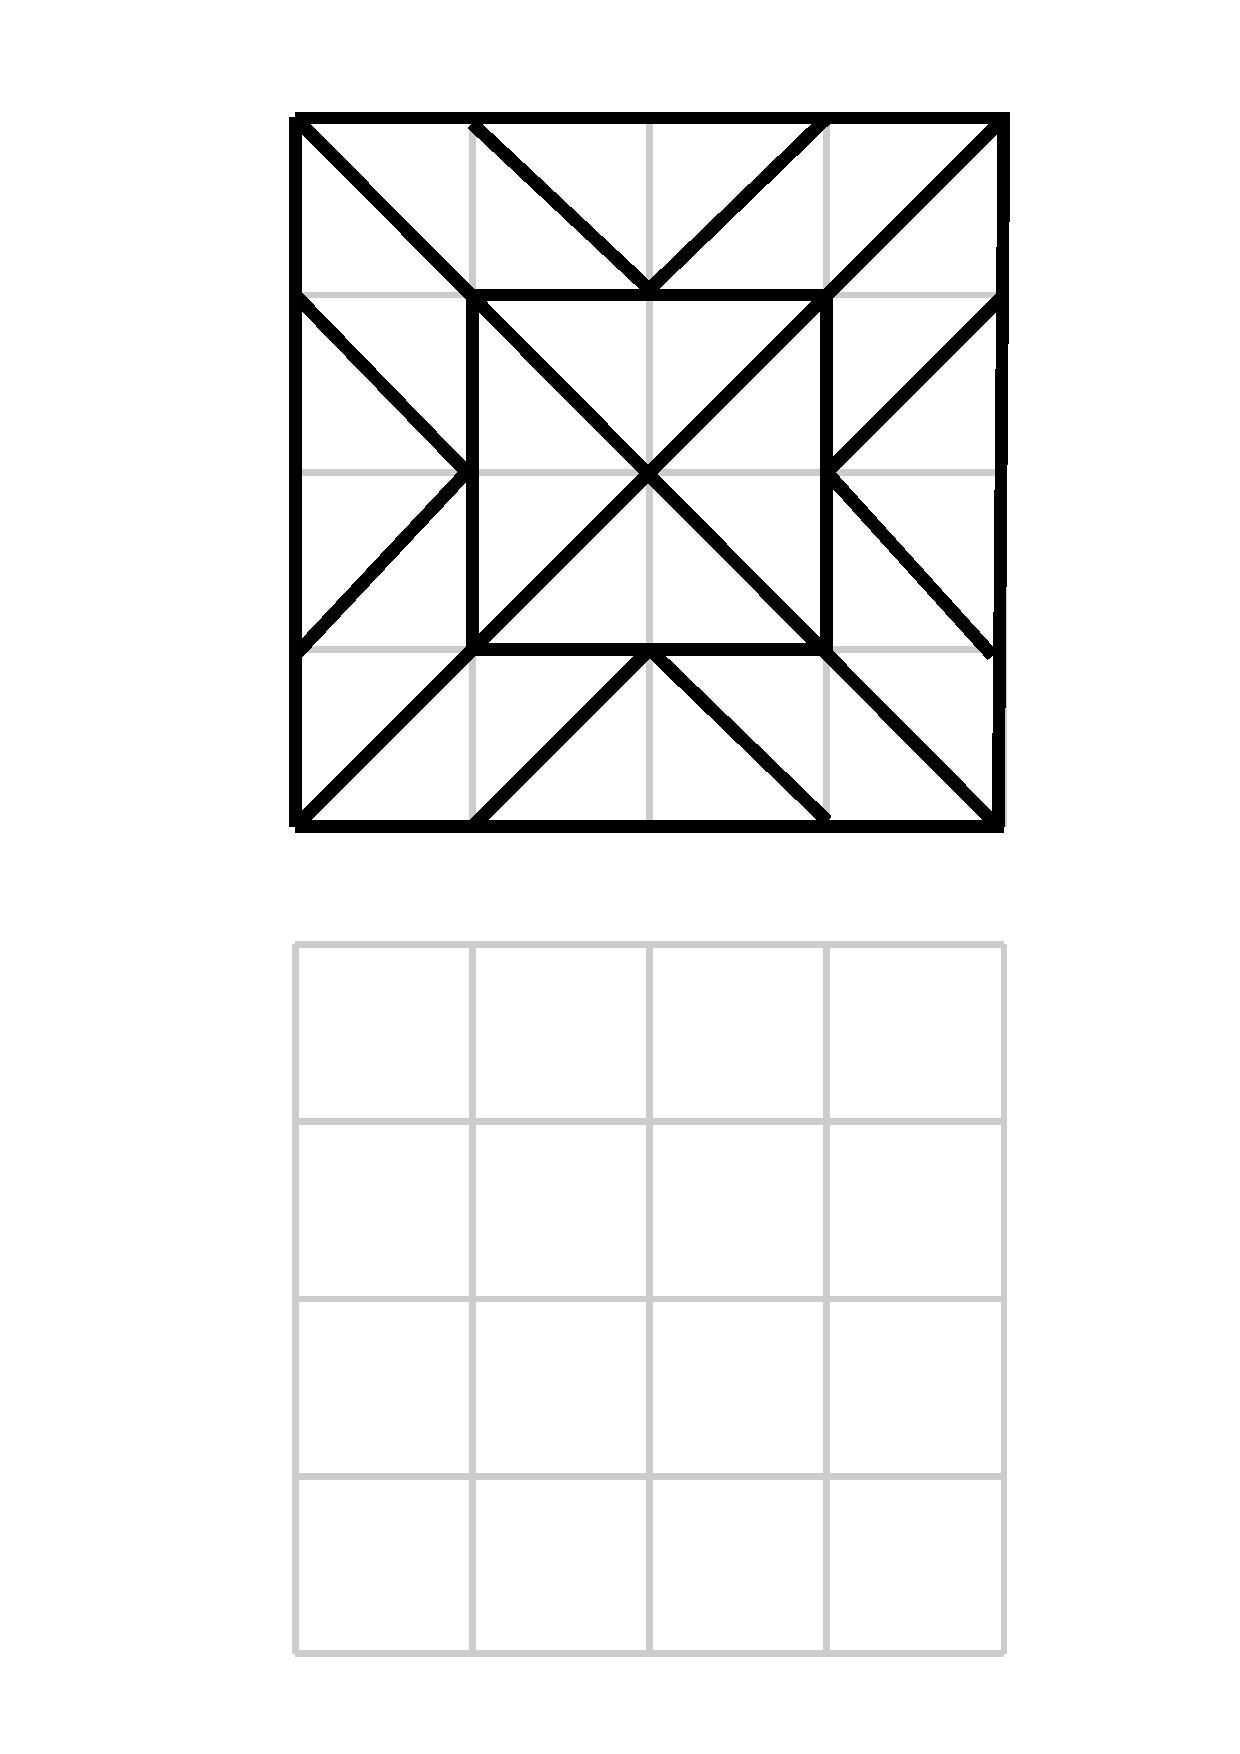 Muster Nachzeichnen Im 4 4 Raster Muster Geometrisch Nachzeichnen